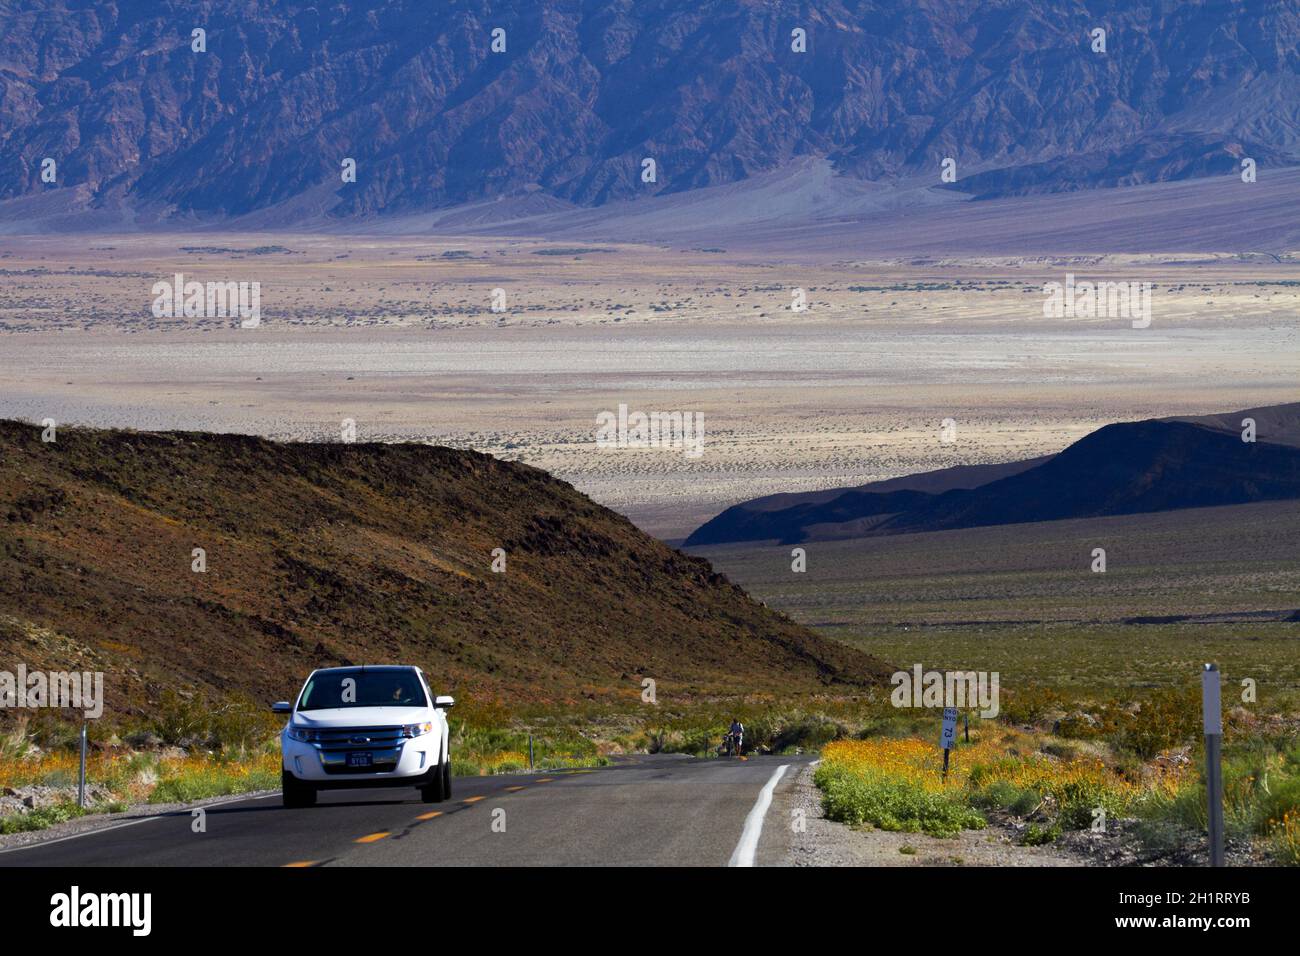 Véhicule sur la State route 190, parc national de la Vallée de la mort, chaîne de Panamint, désert de Mojave, Californie, États-Unis. Banque D'Images